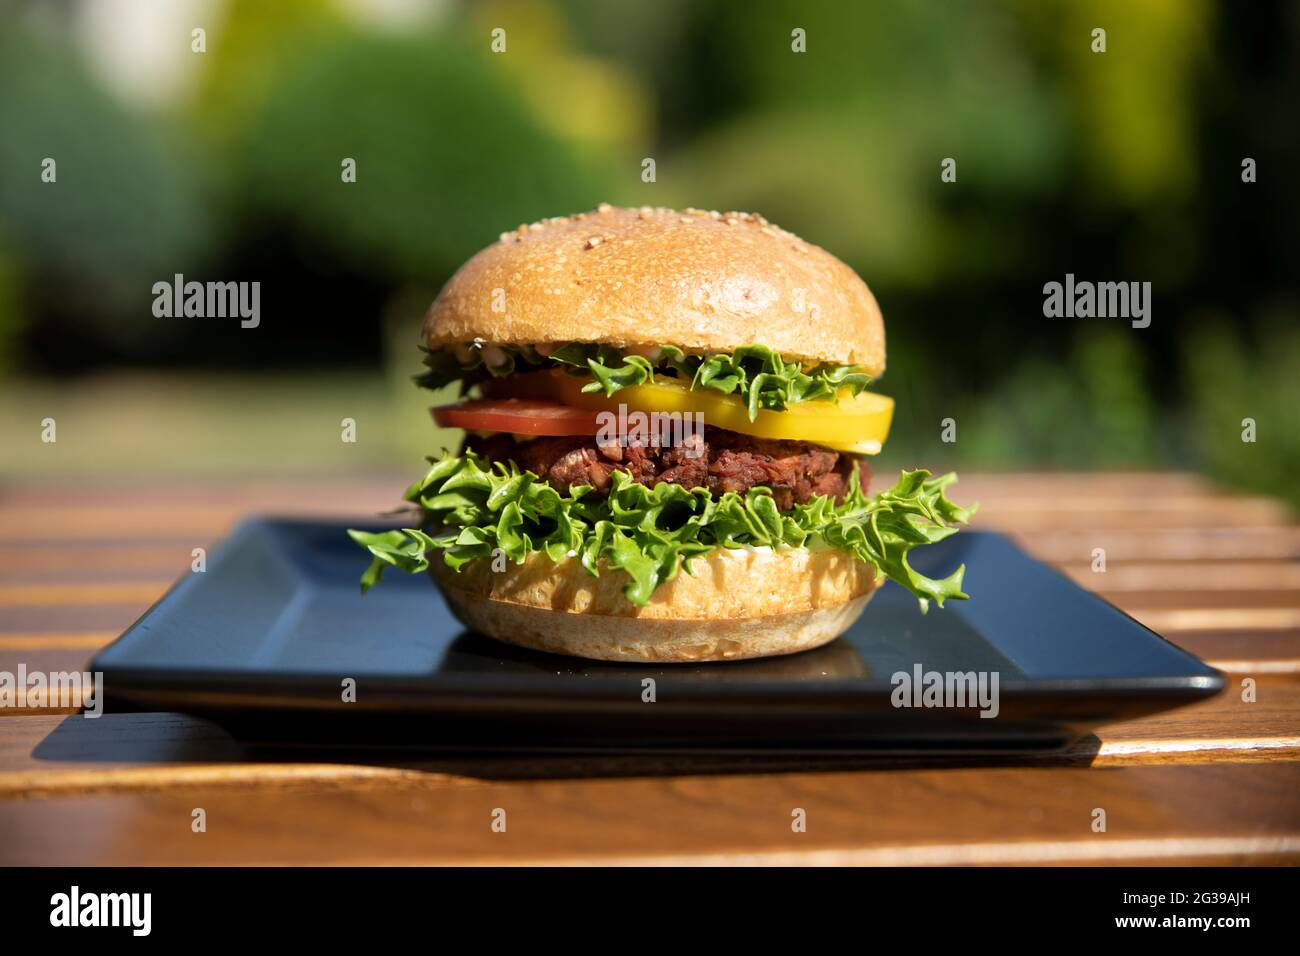 Hamburger végétarien aux haricots verts sur une assiette noire à l'extérieur Banque D'Images